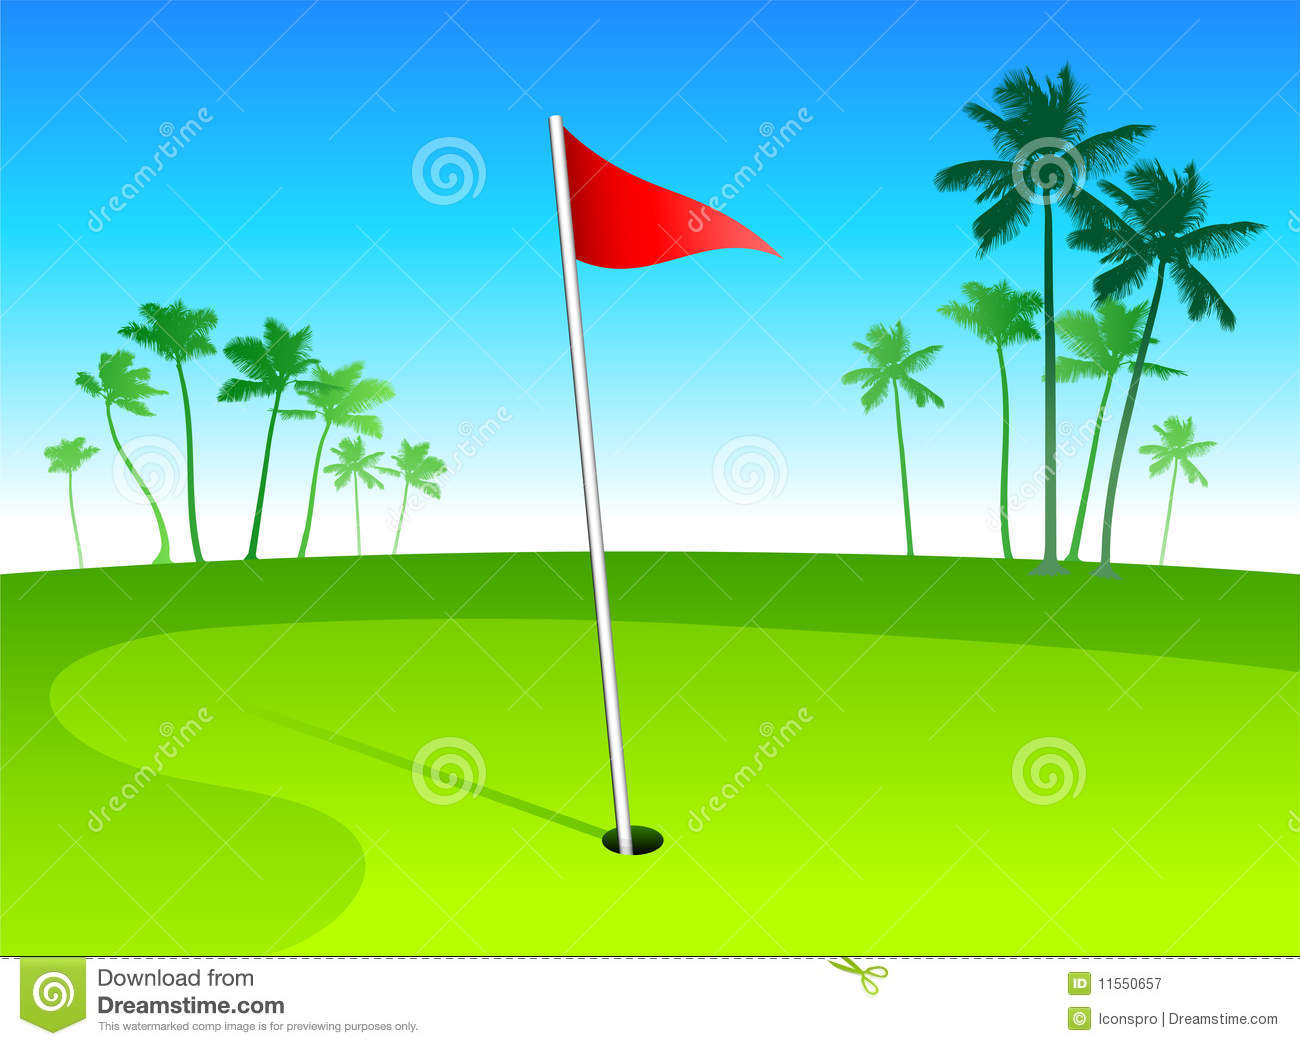 Golf Course Vector